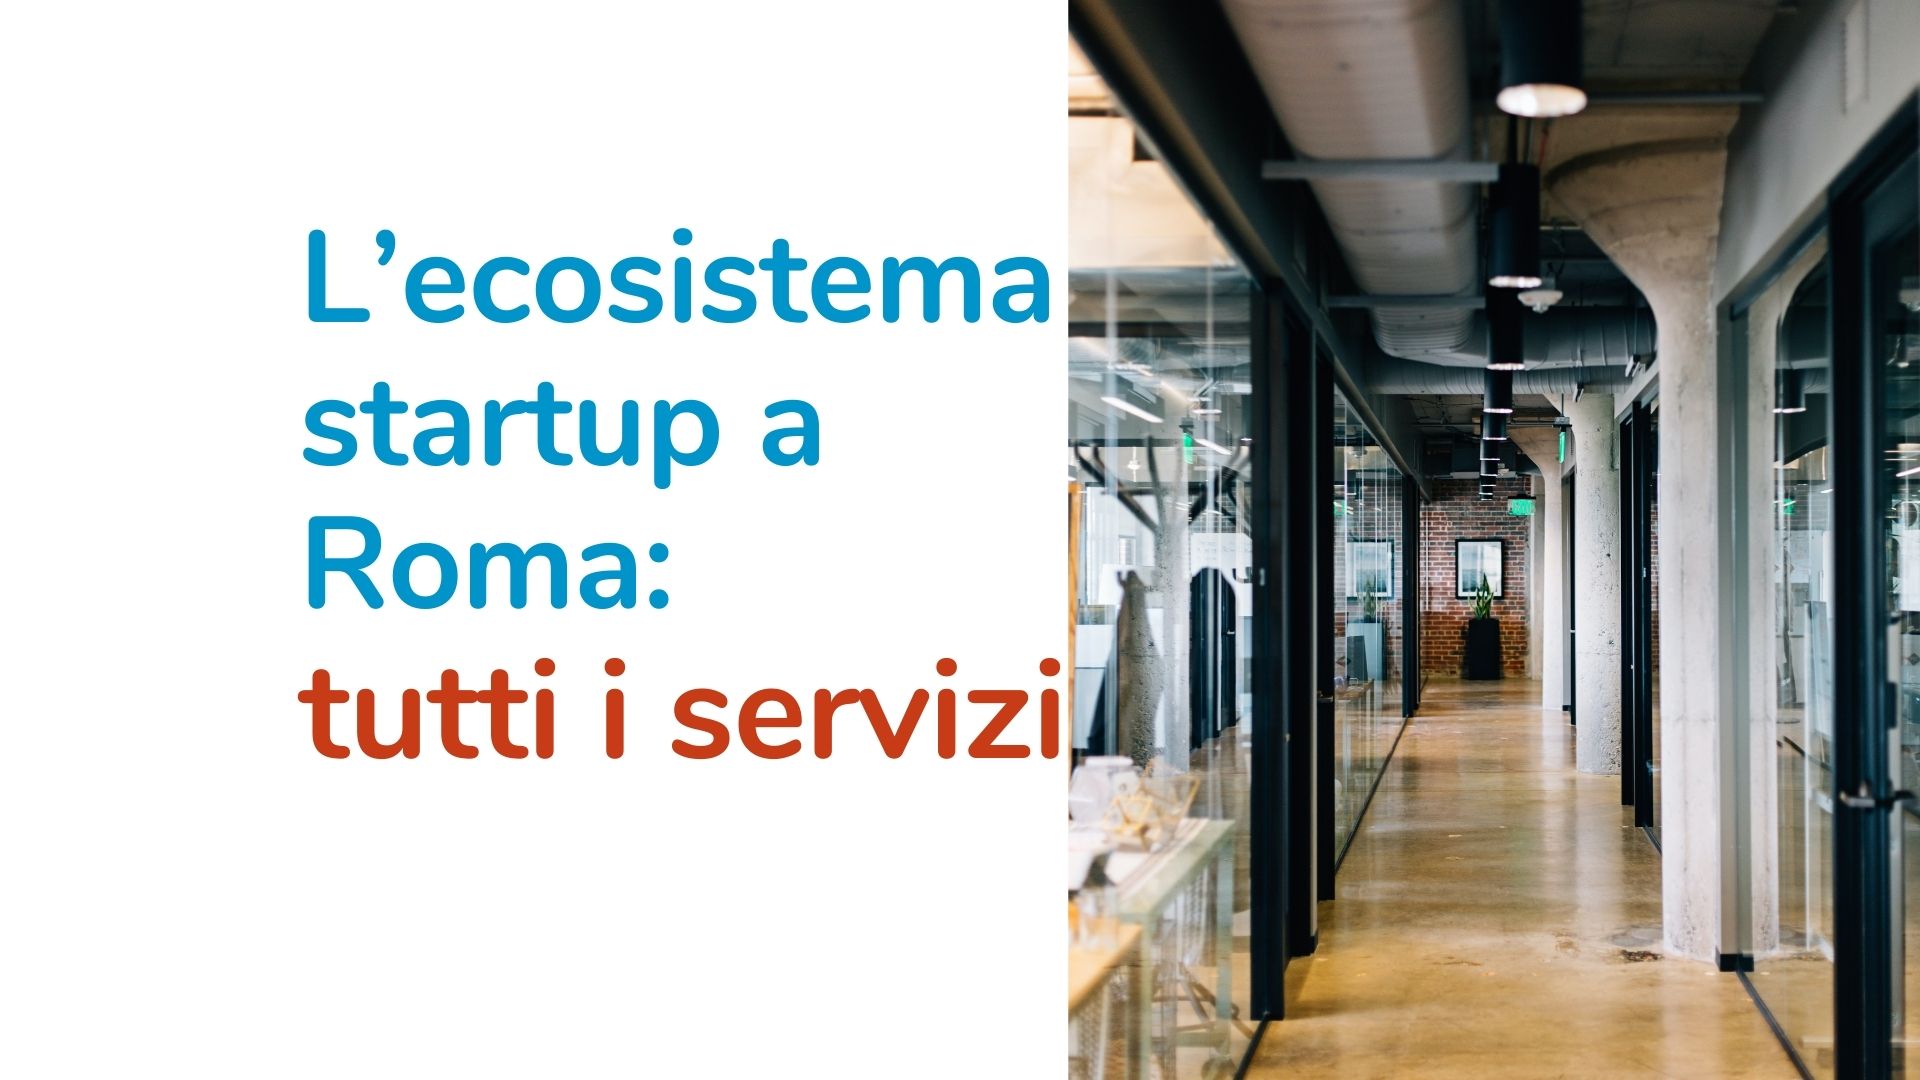 L’ecosistema startup a Roma: tutti i servizi